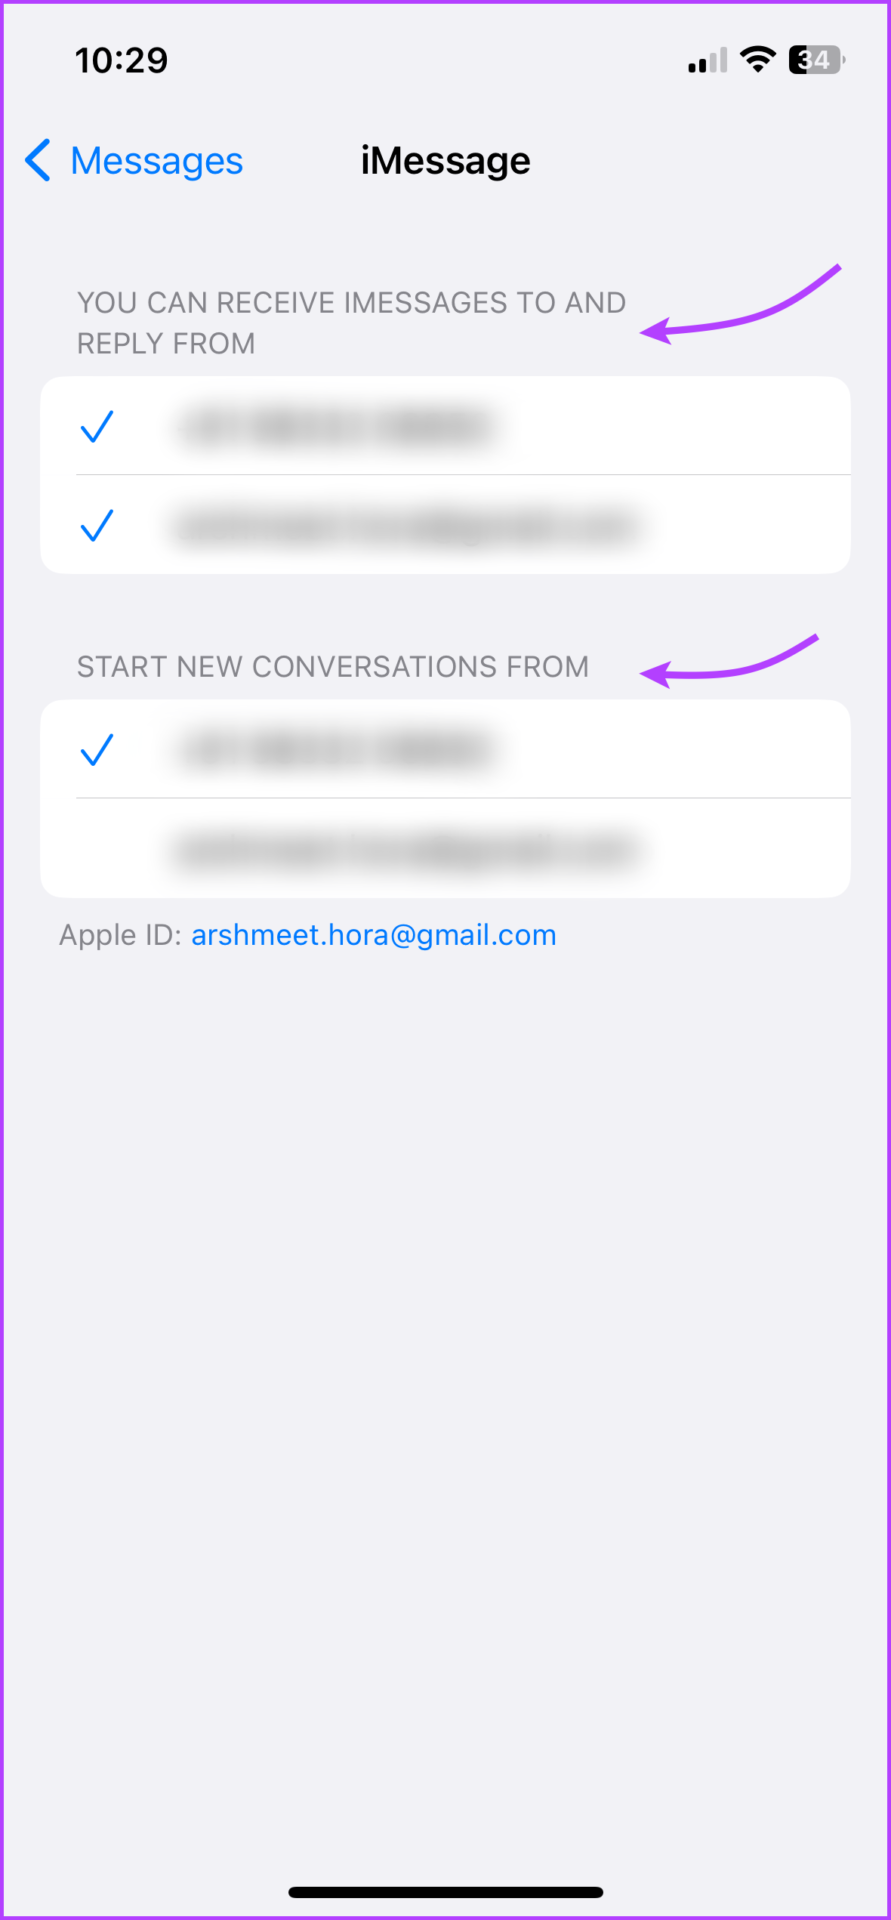 شماره/ایمیل مورد نظر برای دریافت iMessage را بررسی کنید